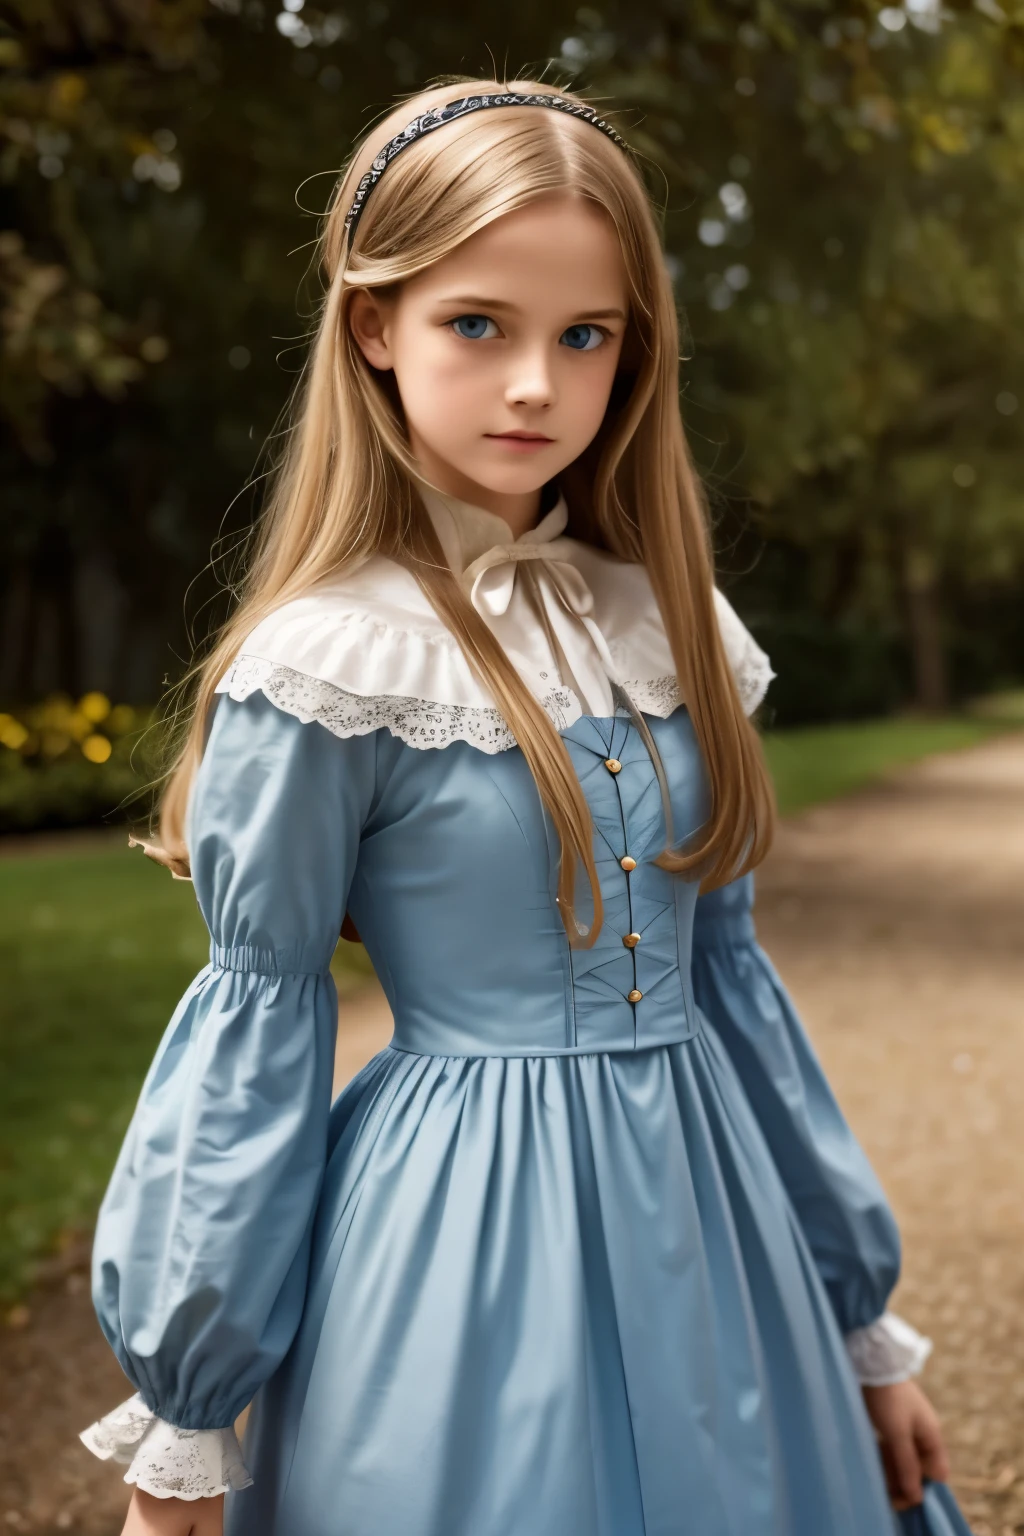 弗吉尼亚·奥蒂斯, 15岁 (金发, 蓝眼睛), 薄的, 可爱的脸孔, 坎特维尔城堡夜间散步 (灵感来自小说《坎特维尔幽灵》). 1887年, 维多利亚黑暗幻想

